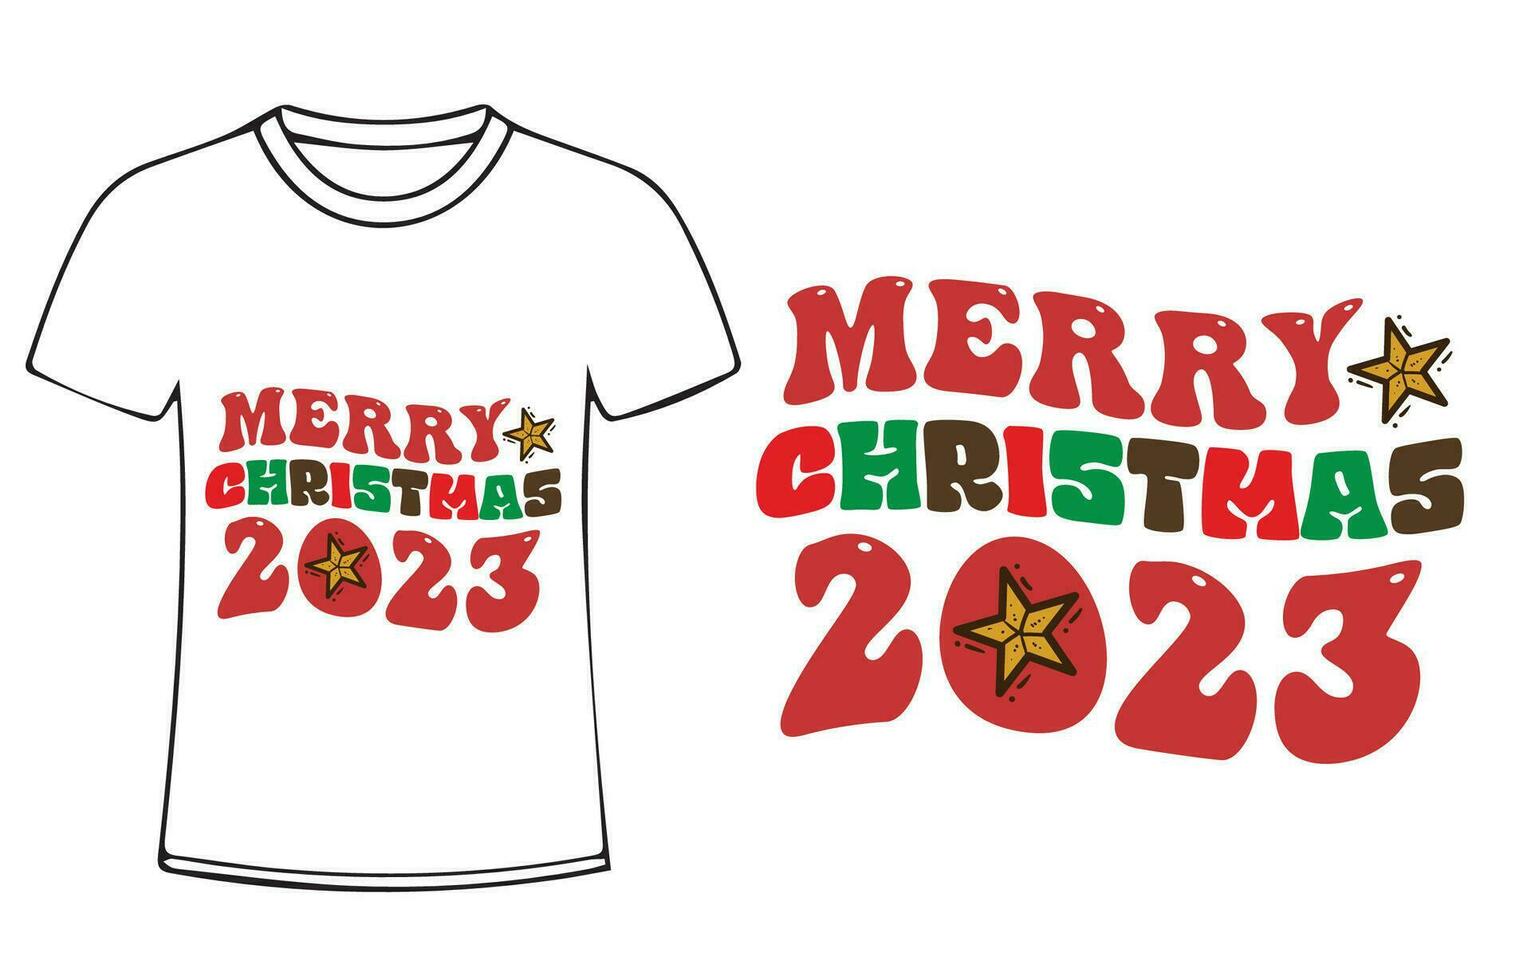 Navidad citar nuevo t camisa diseño para camiseta, tarjetas, marco obra de arte, bolsas, tazas, pegatinas, vasos, teléfono casos, impresión etc. vector